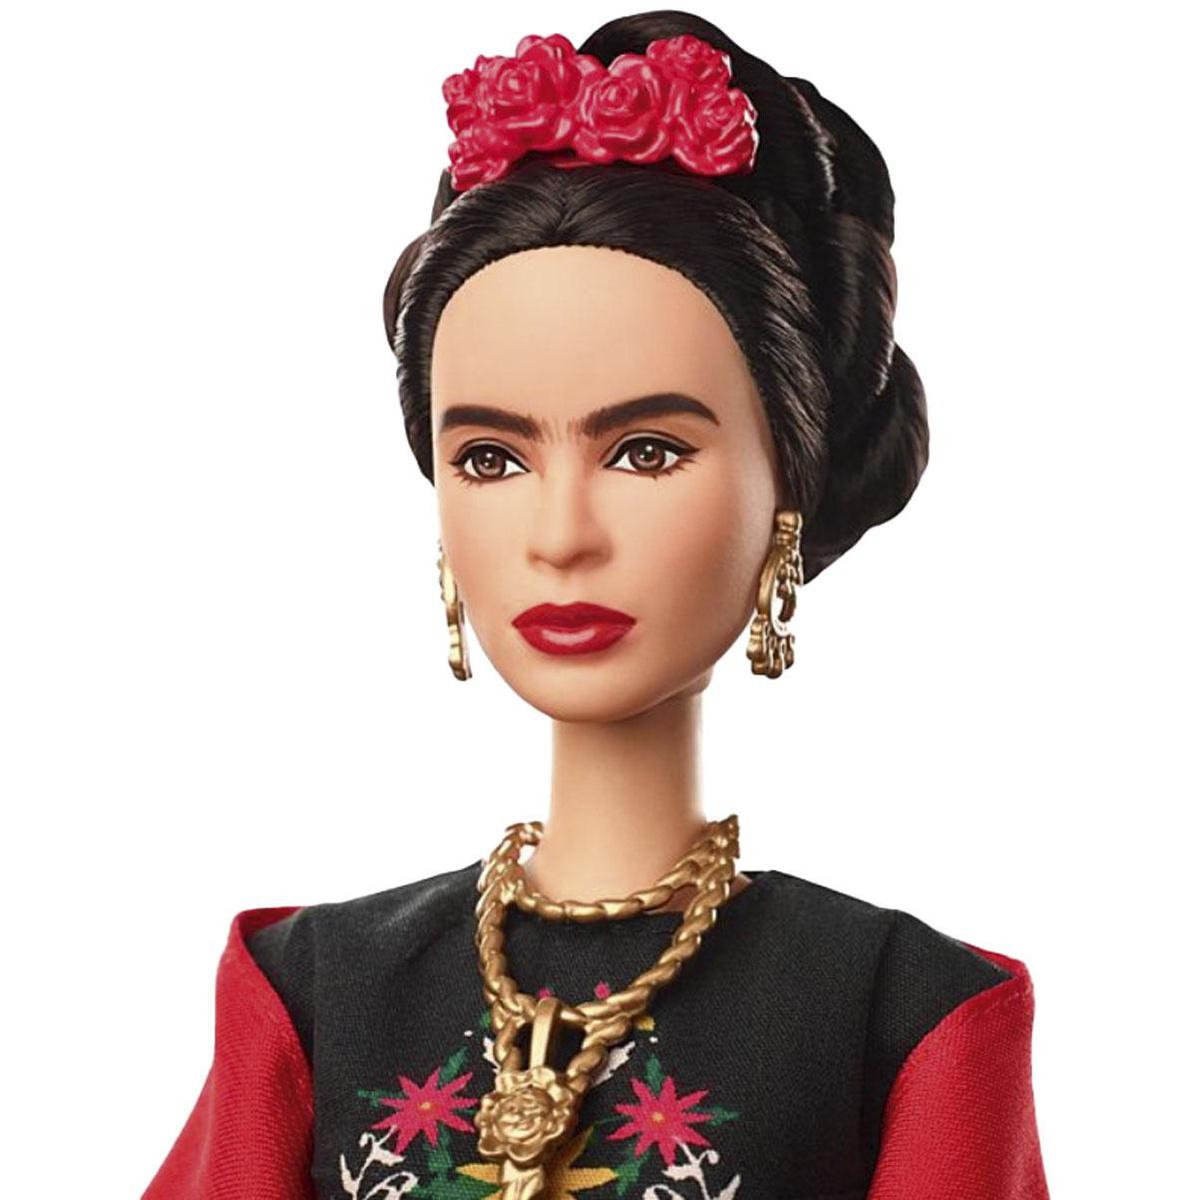 Barbie créée par Mattel mais non vendue chez nous, mattel.com